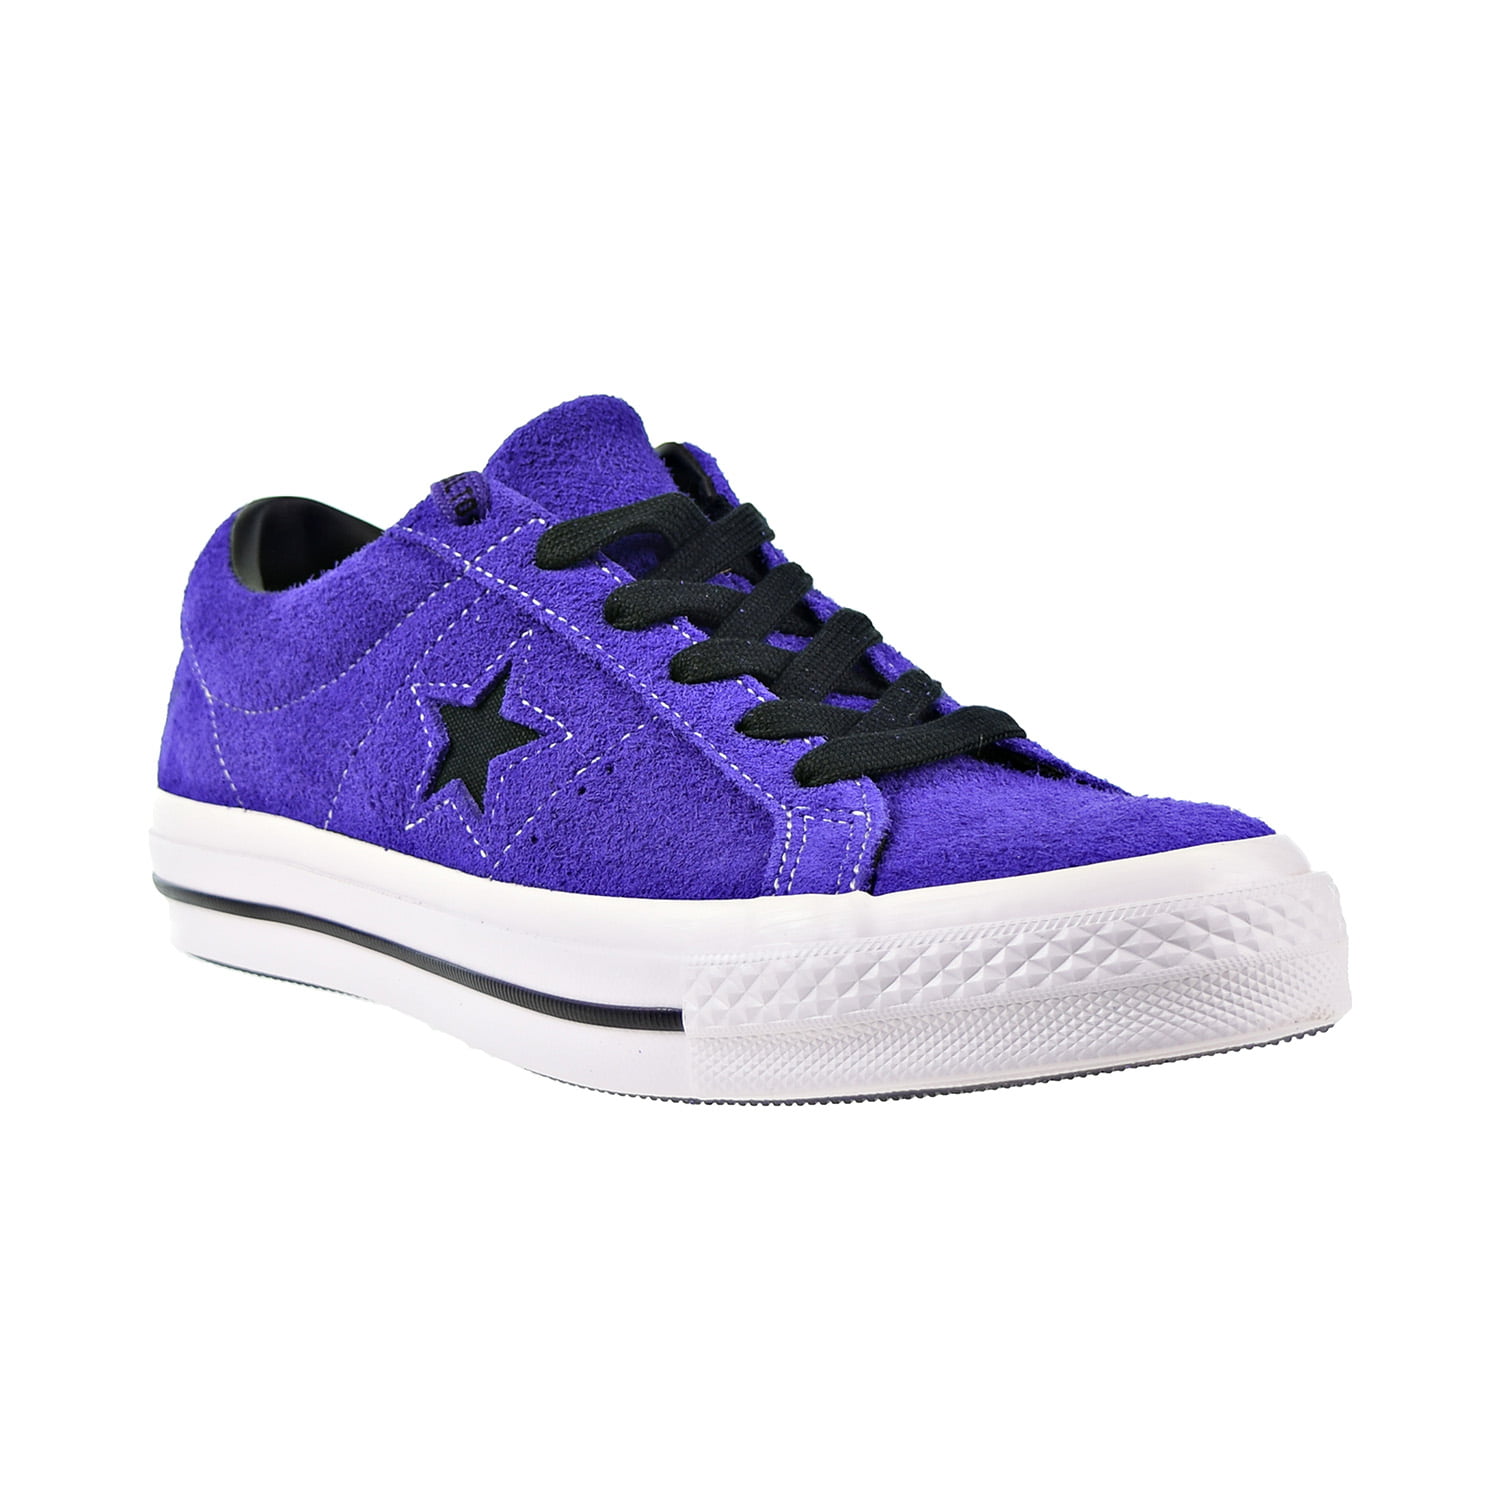 Converse One Ox Men's Shoes Court Purple-Black-White 163248c - Walmart.com